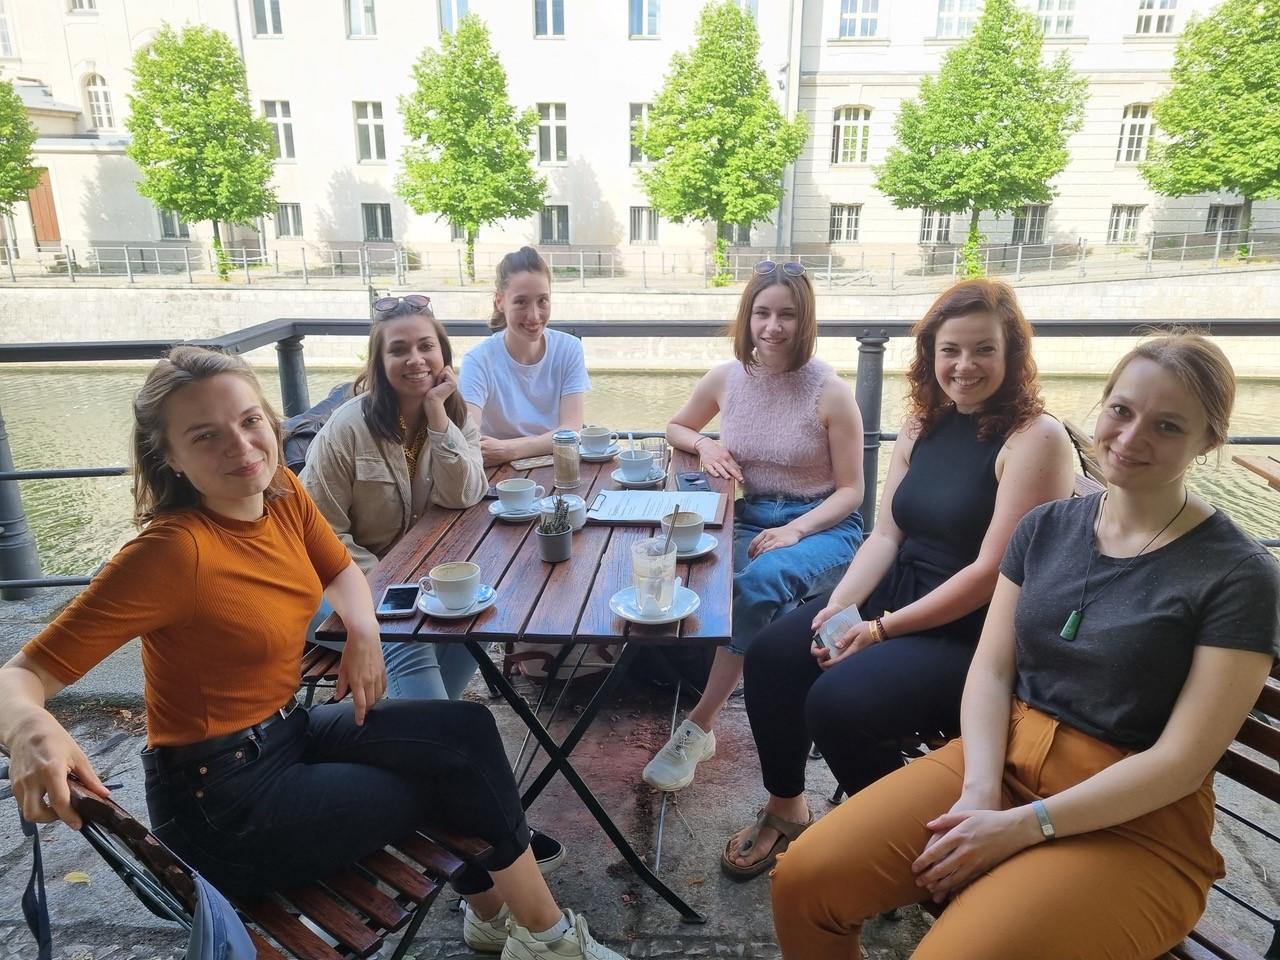 Gruppenfoto der TheO-Studierenden und der KM-Magazin Chefredakteurin an einem Cafe-Tisch draußen.